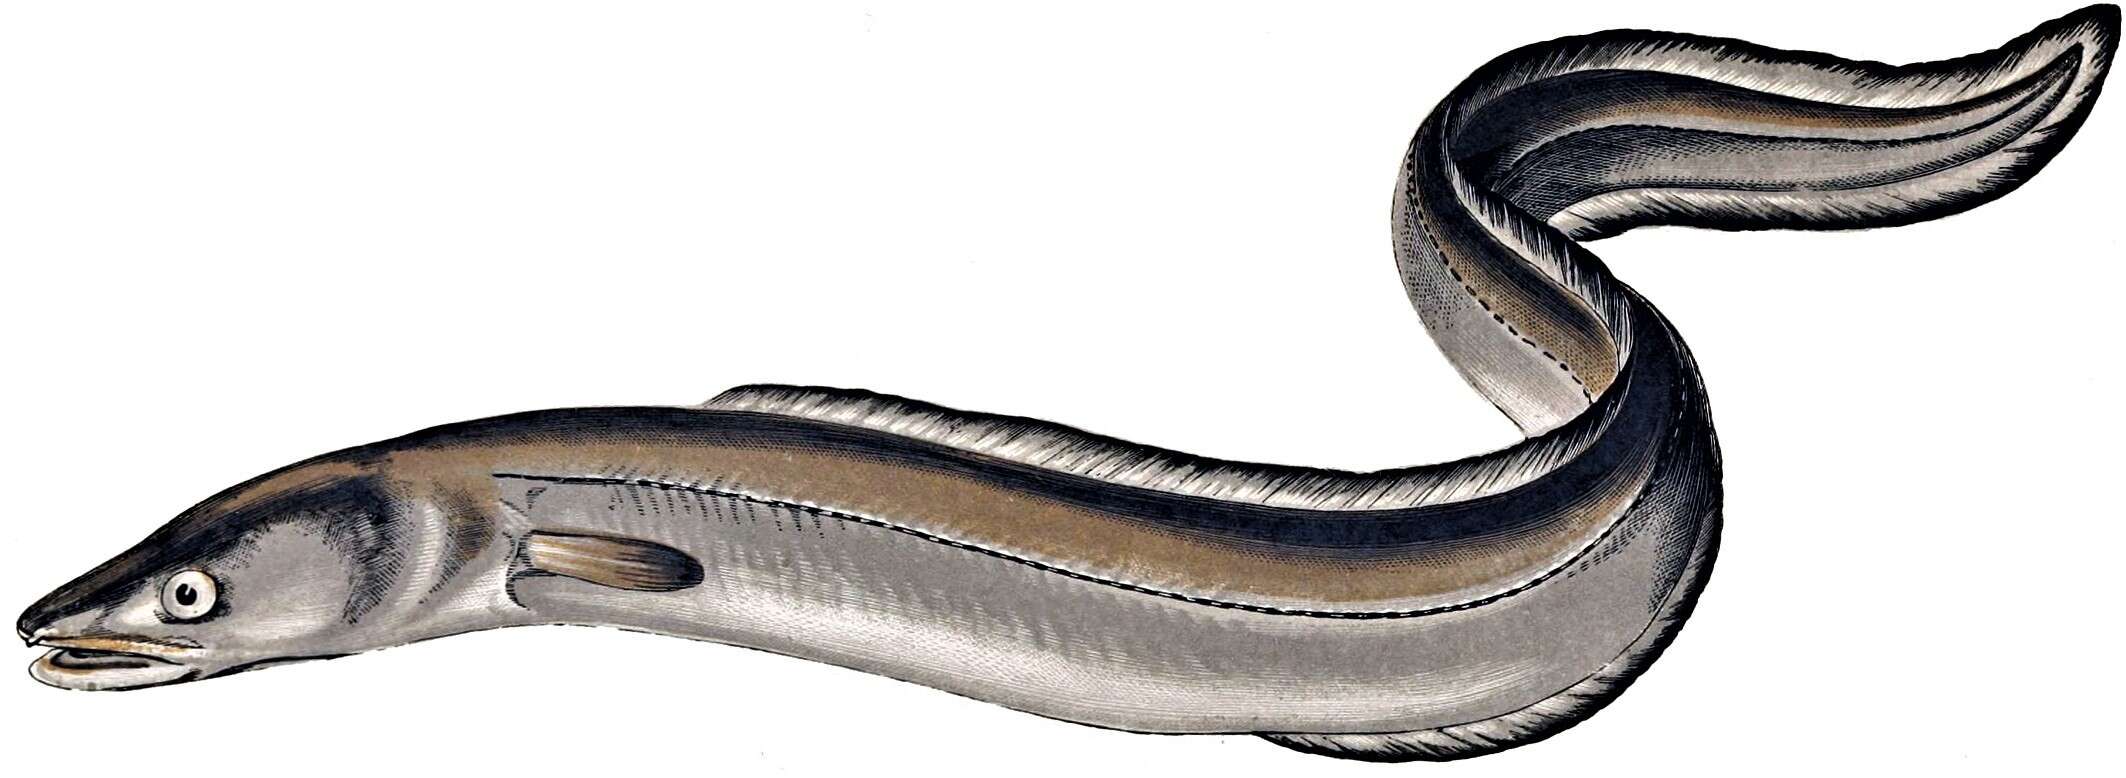 Image of conger eels